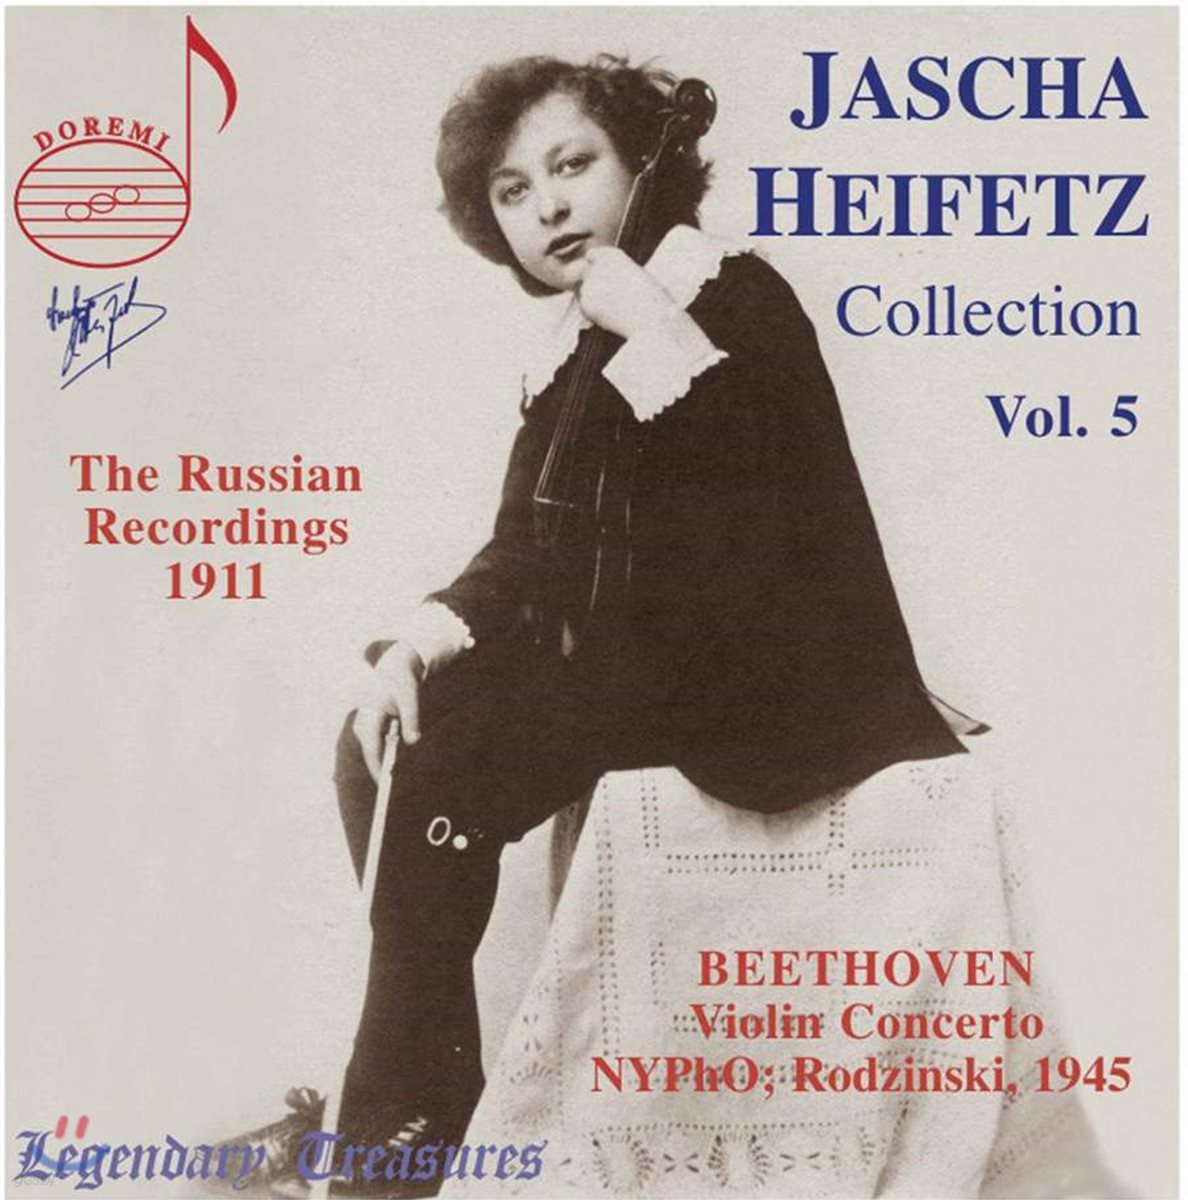 하이페츠 콜렉션 5집 (Jascha Heifetz Collection Vol. 5)